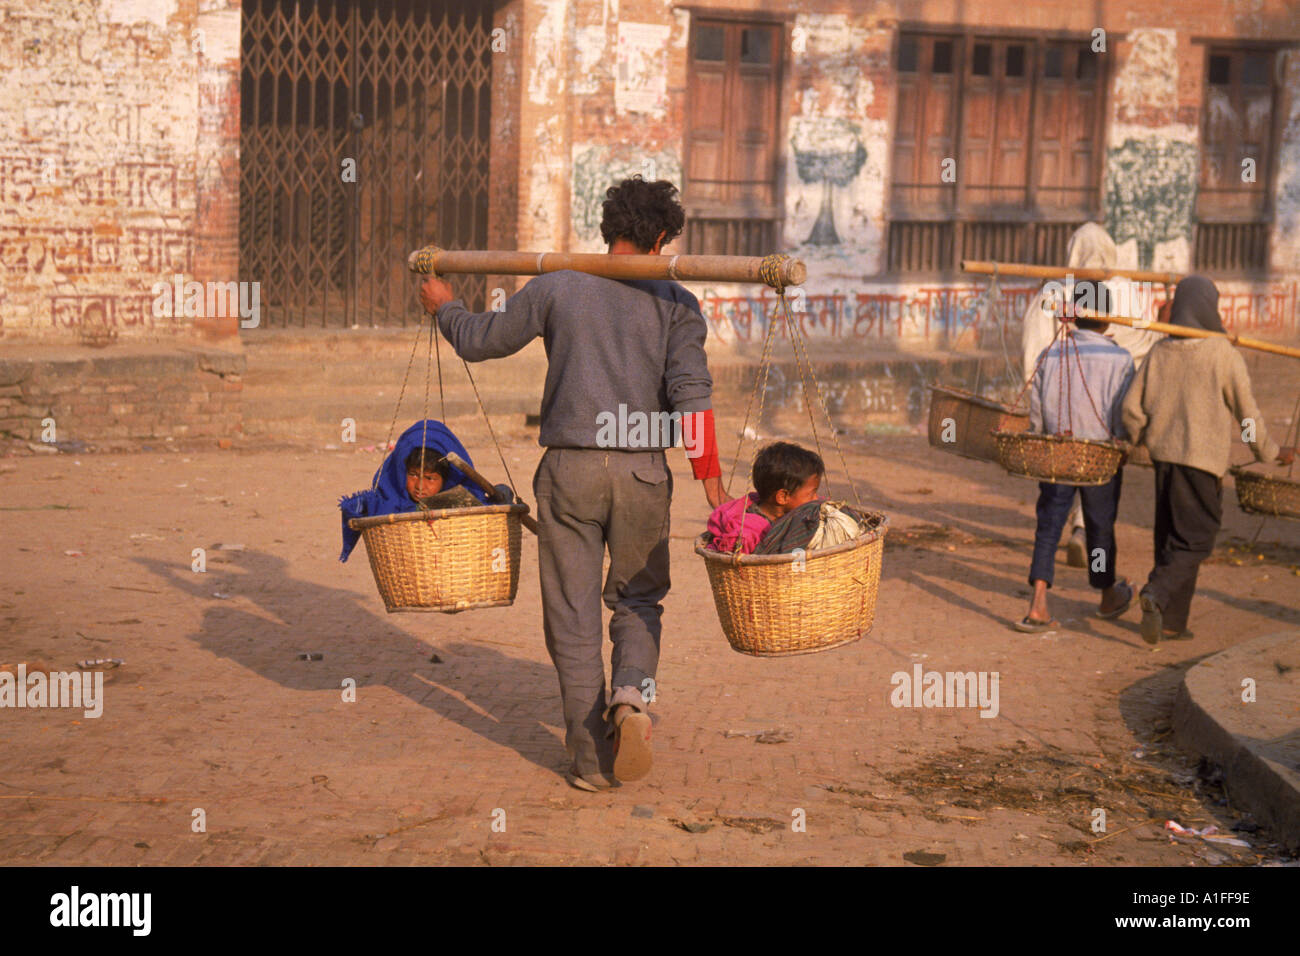 Kinder taxi zwei Kinder in Körben an einem Mast, durchgeführt von einem Mann in Bhaktapur Nepal Asien G Hellier durchgeführt Stockfoto